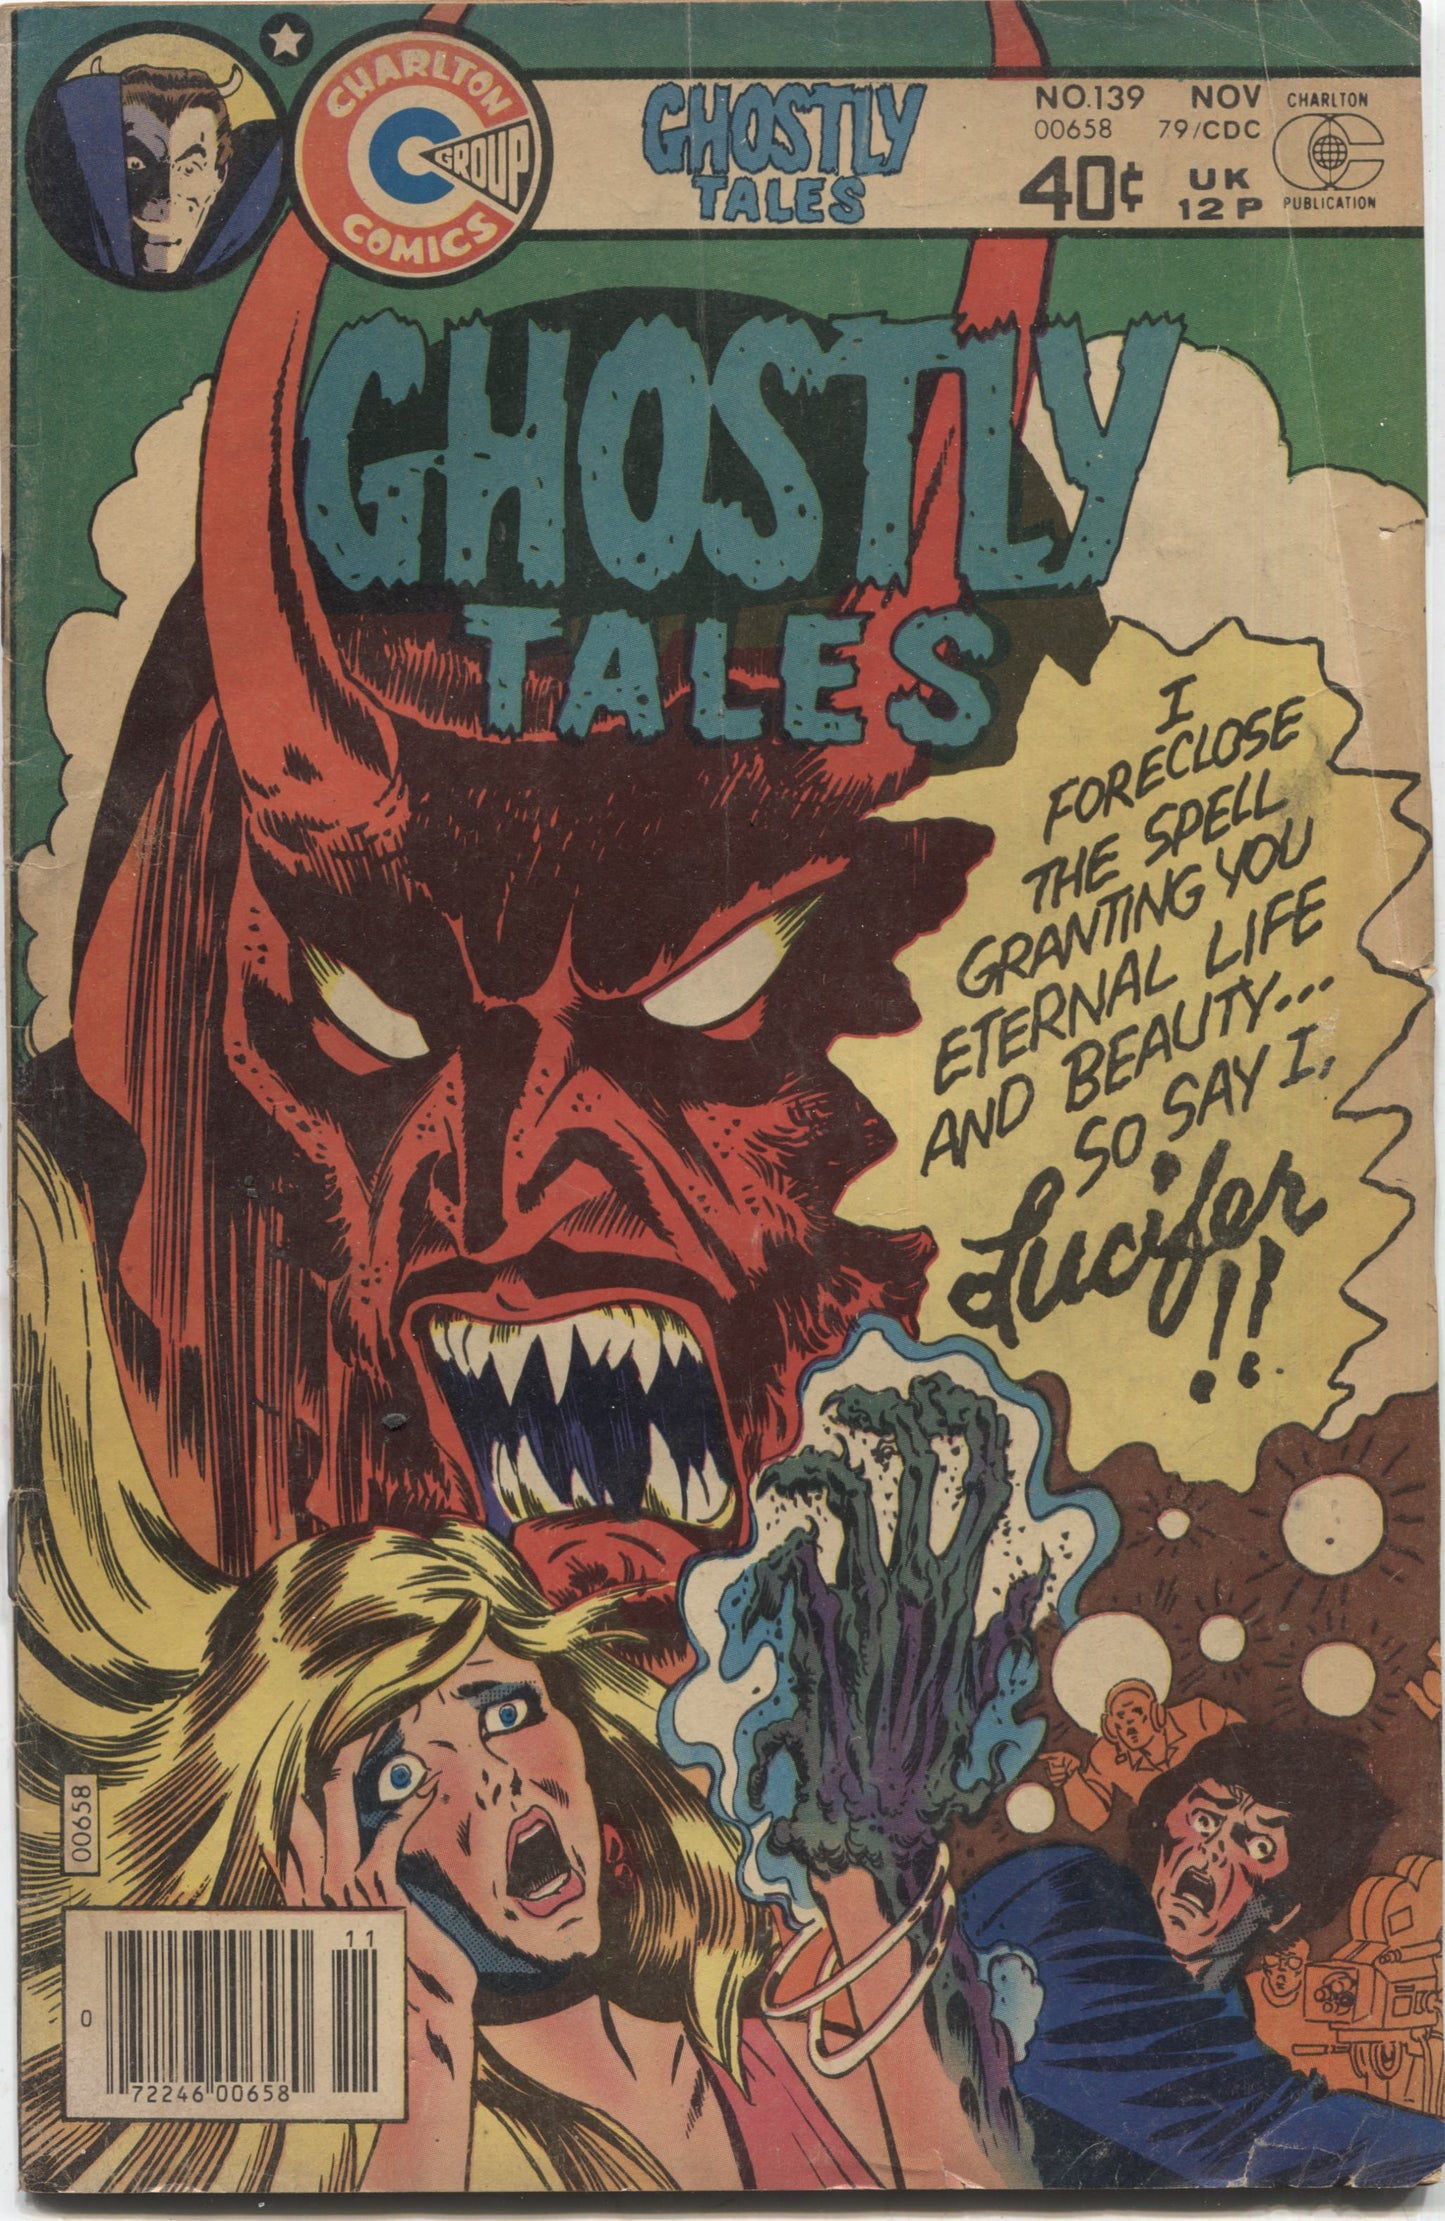 Ghostly Tales No. 139, Charlton Comics, November 1979